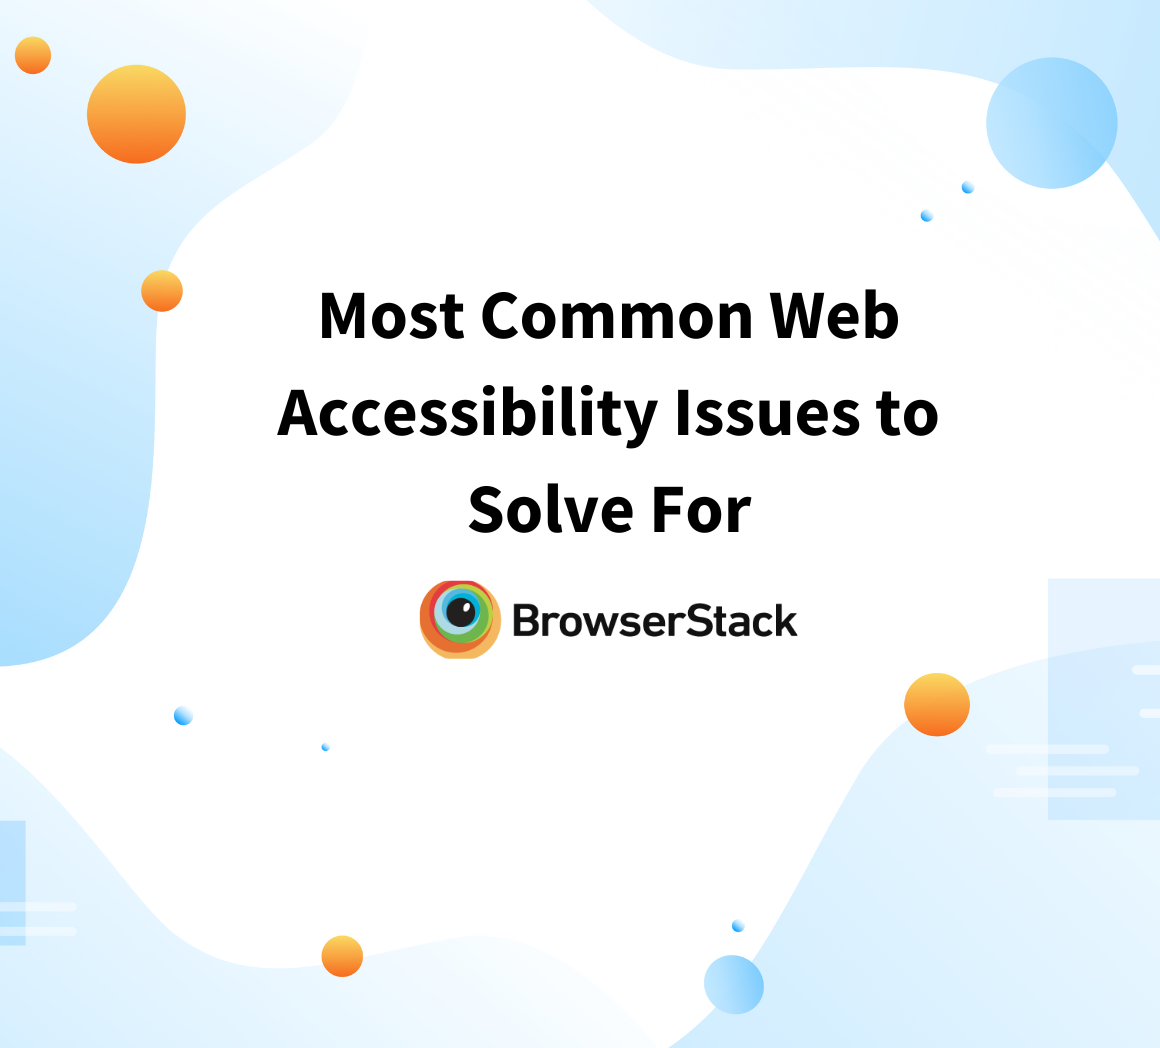 Web accessibility testing 1 - keyboard